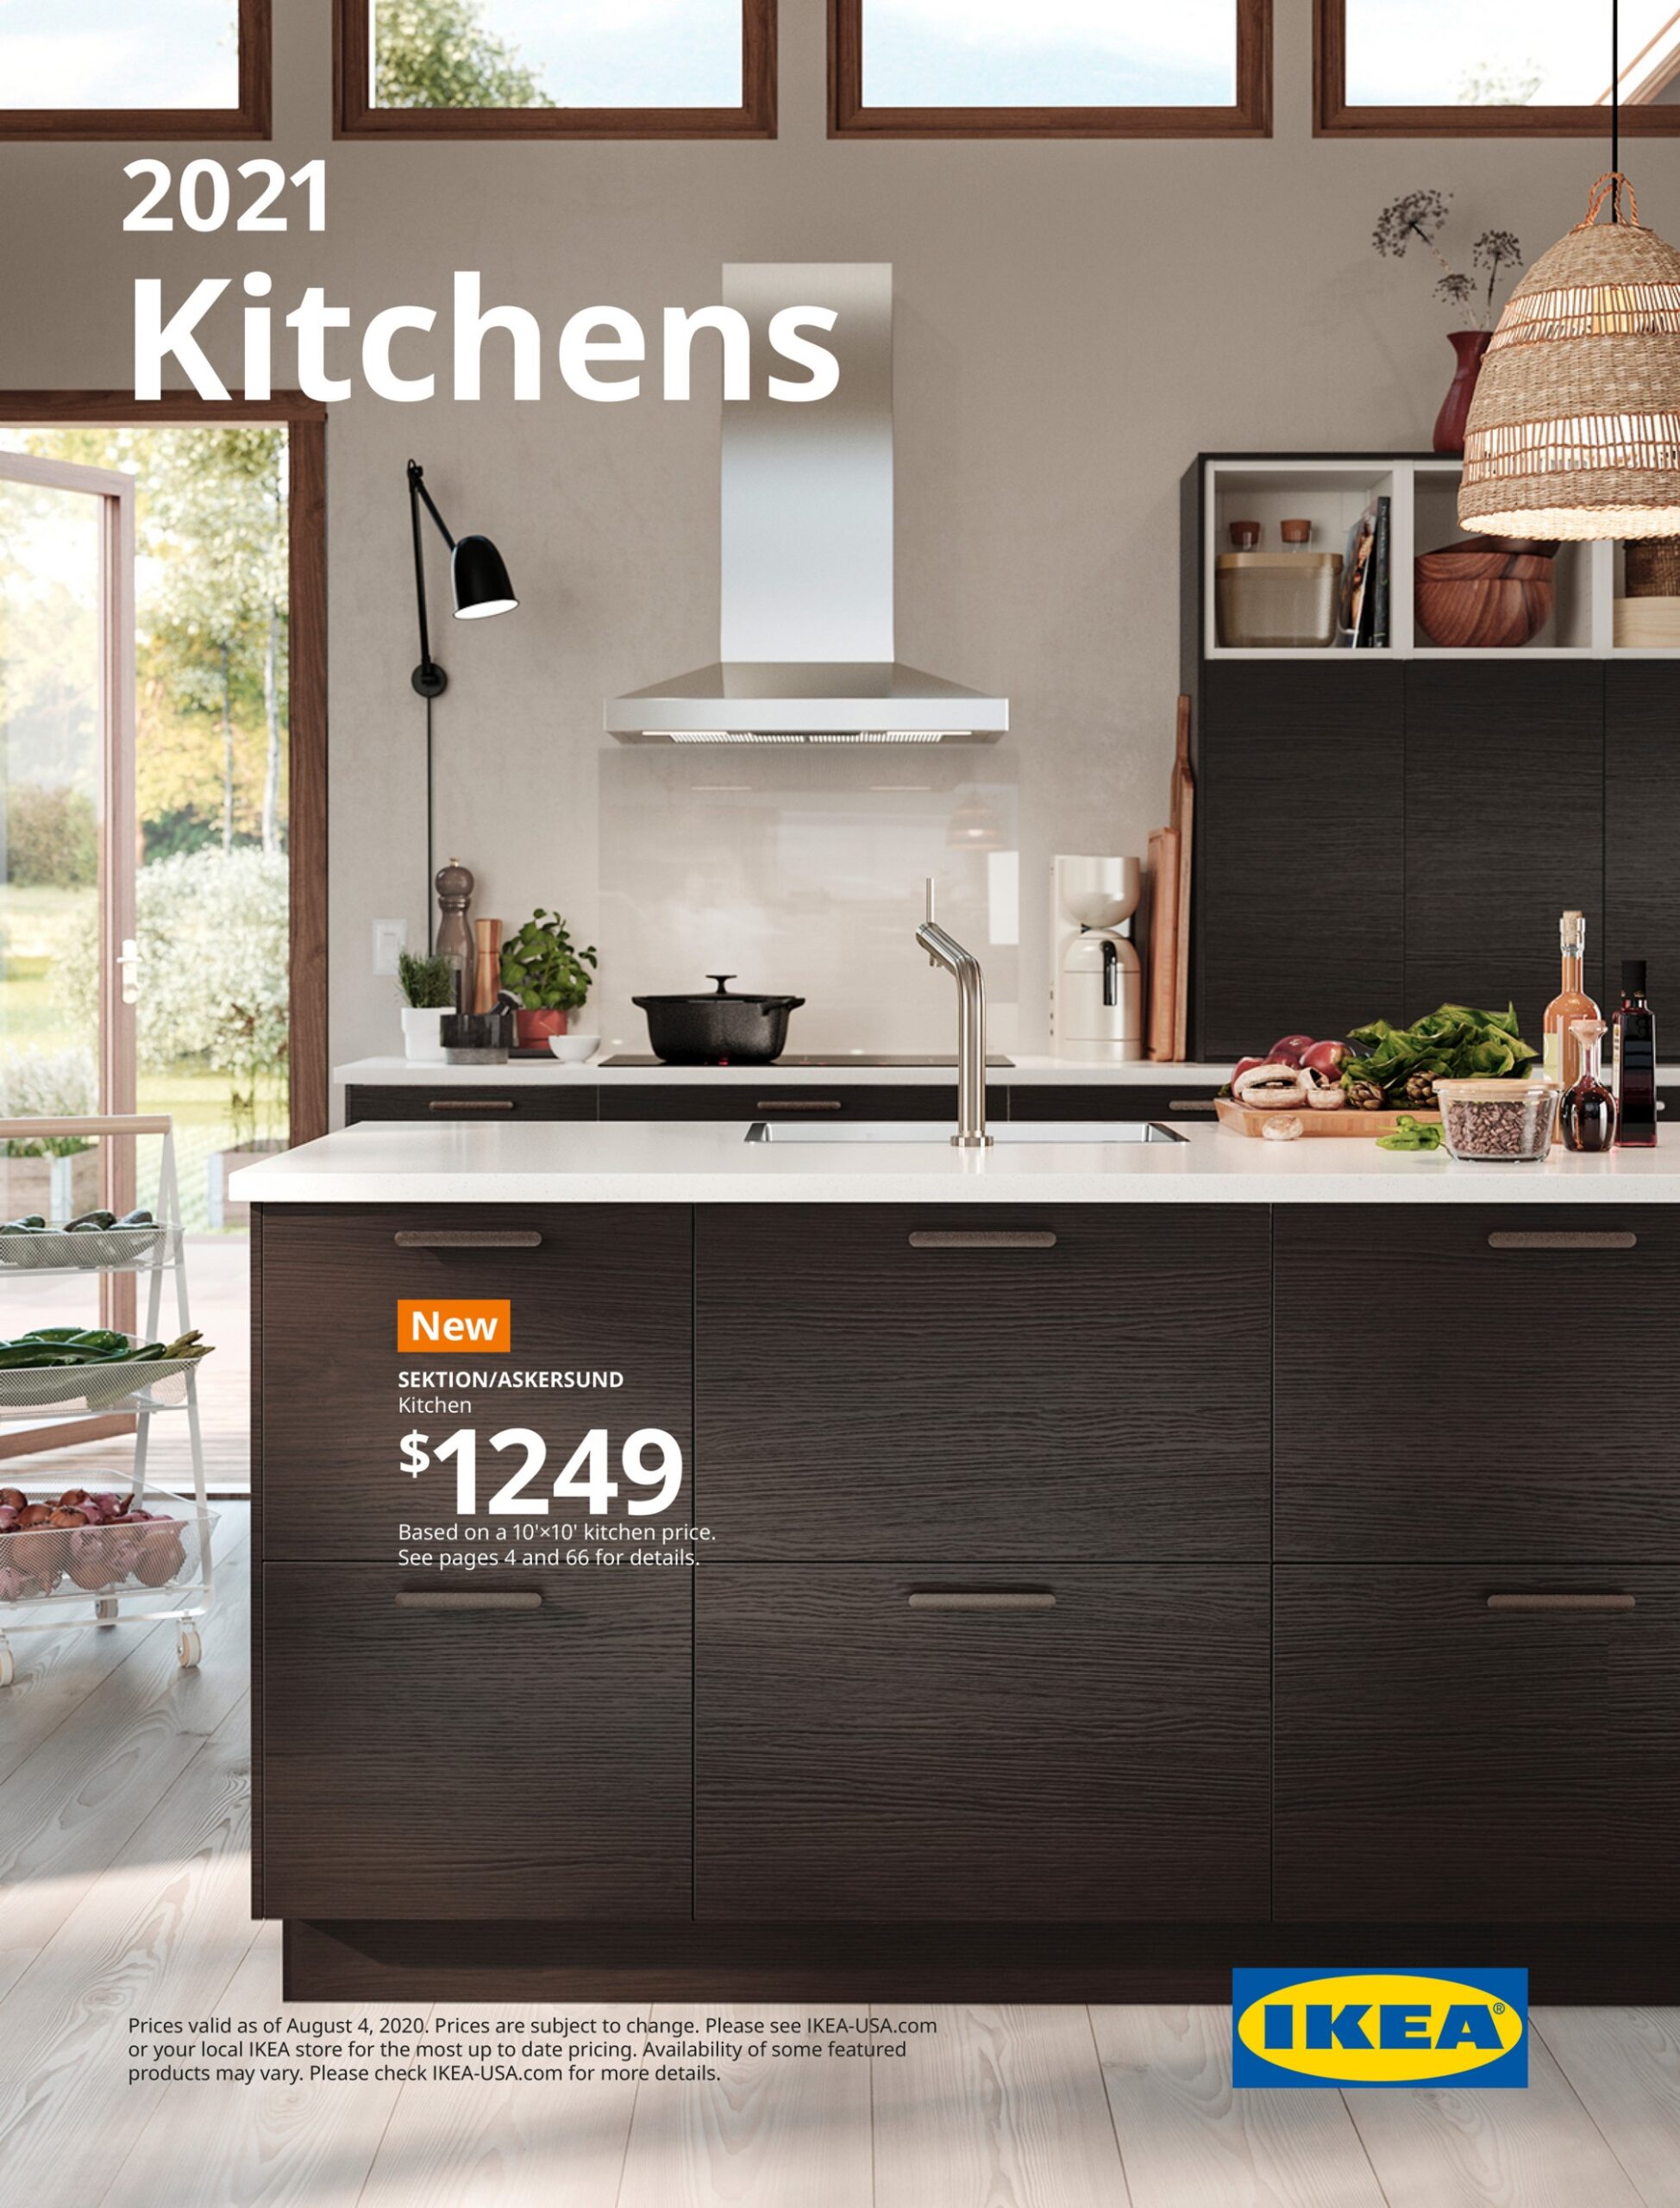 IKEA Kitchen Brochure 5 - Page 5 - ikea kitchen